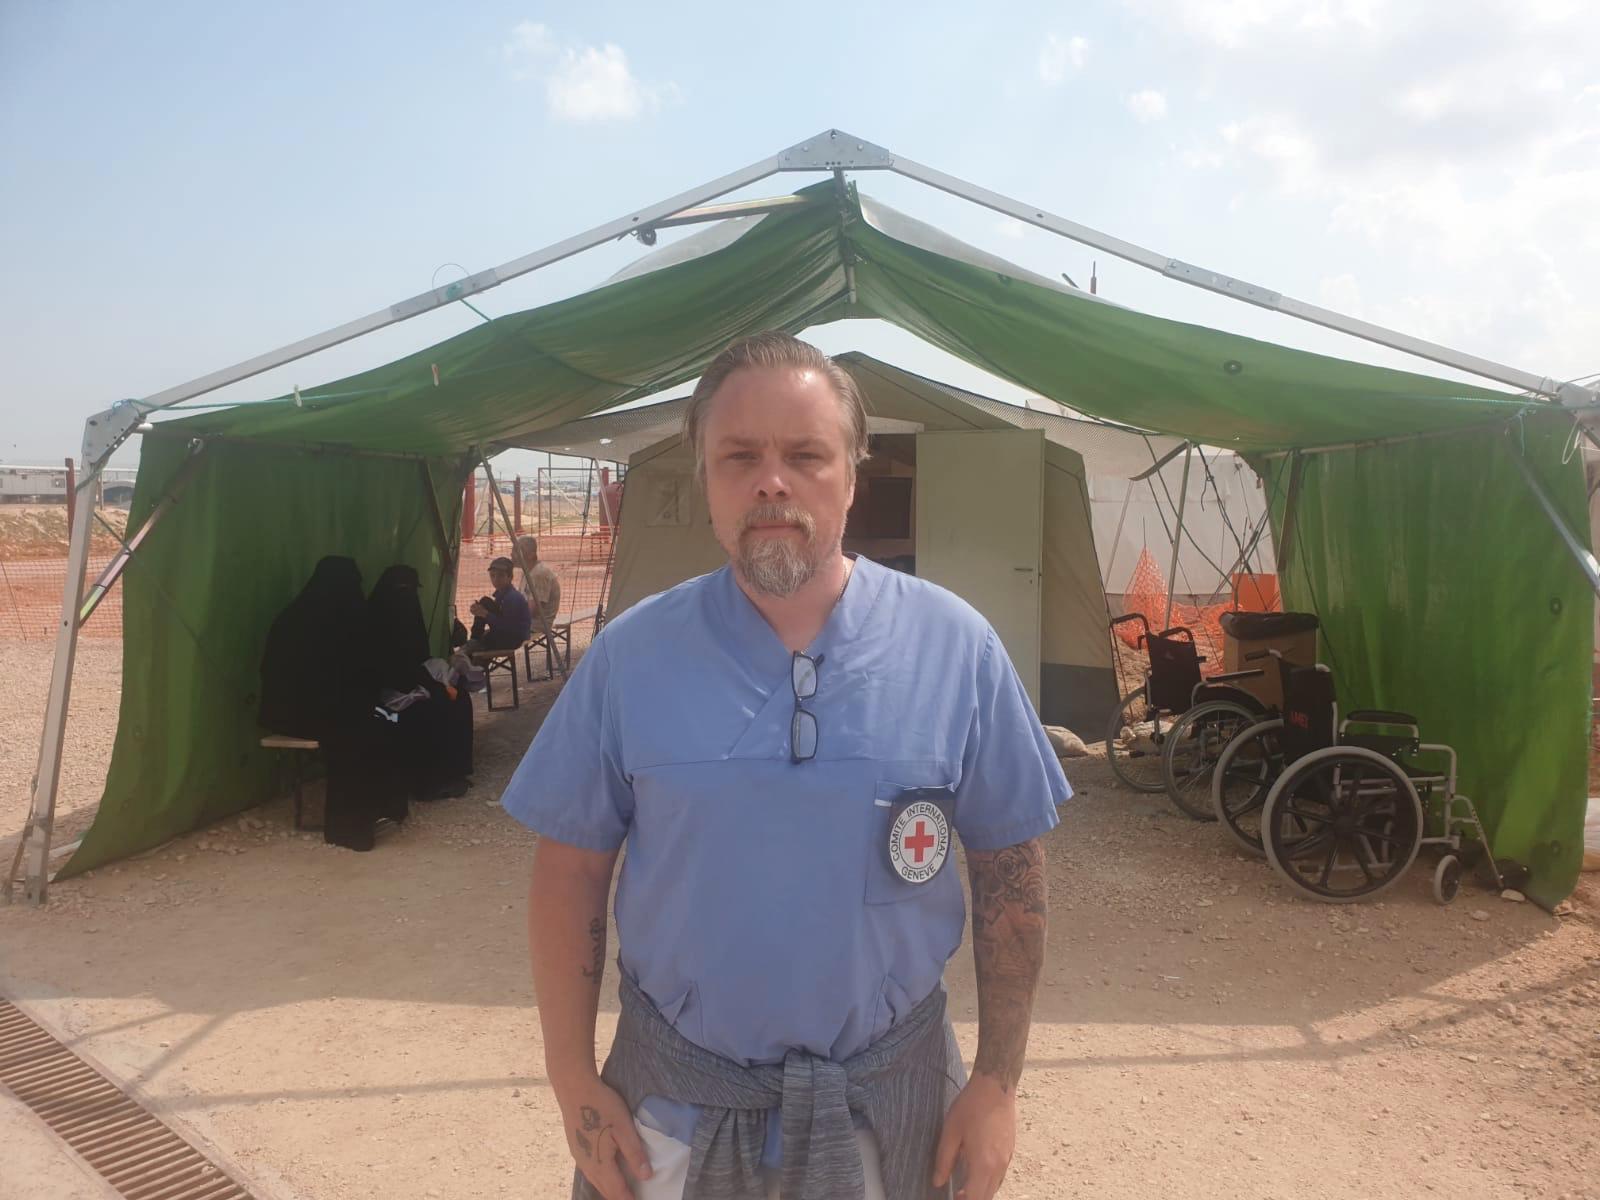 Fredrik Runsköld jobbar som sjuksköterska på ett fältsjukhus precis utanför lägret al-Hol i norra Syrien. "När coronaviruset väl sprids i lägret kommer det att ske okontrollerat och explosionsartat" säger han.